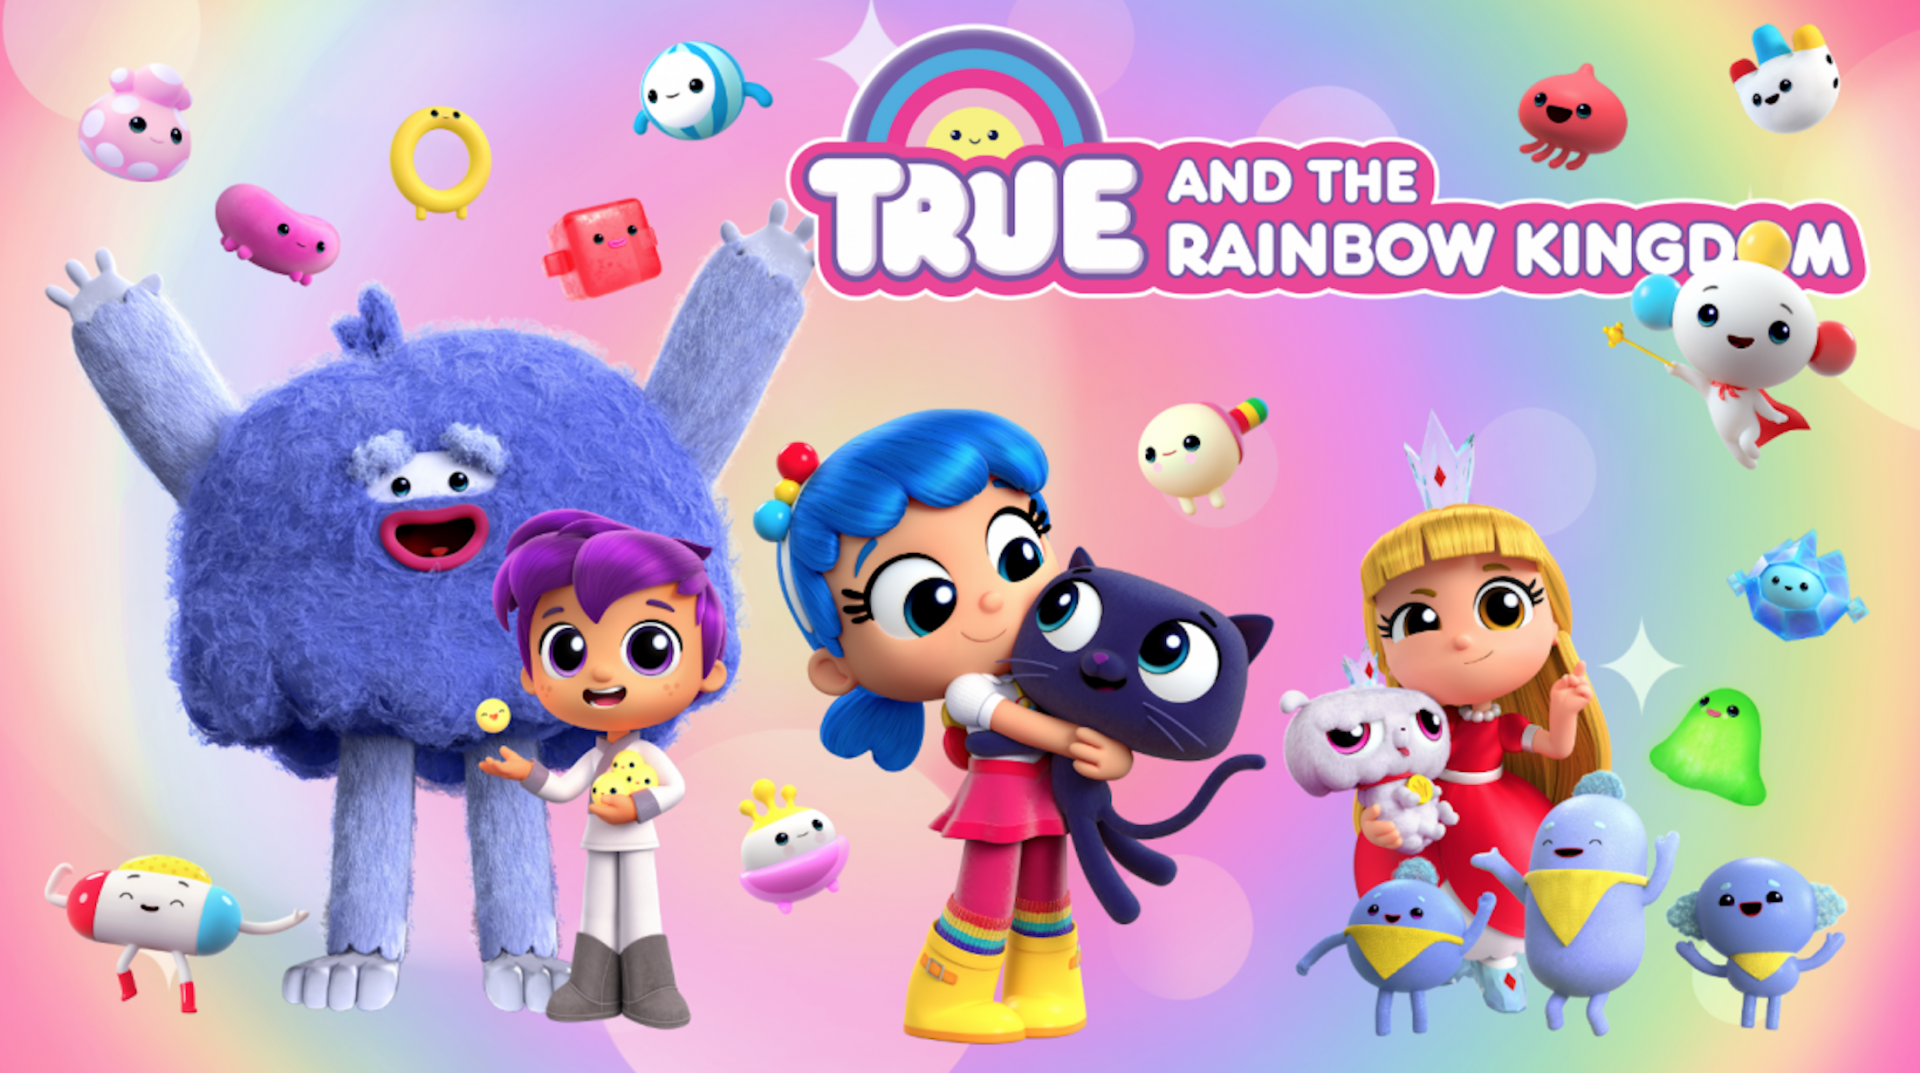 小真与彩虹王国 英文版 共4季《True and the Rainbow Kingdom》在线观看